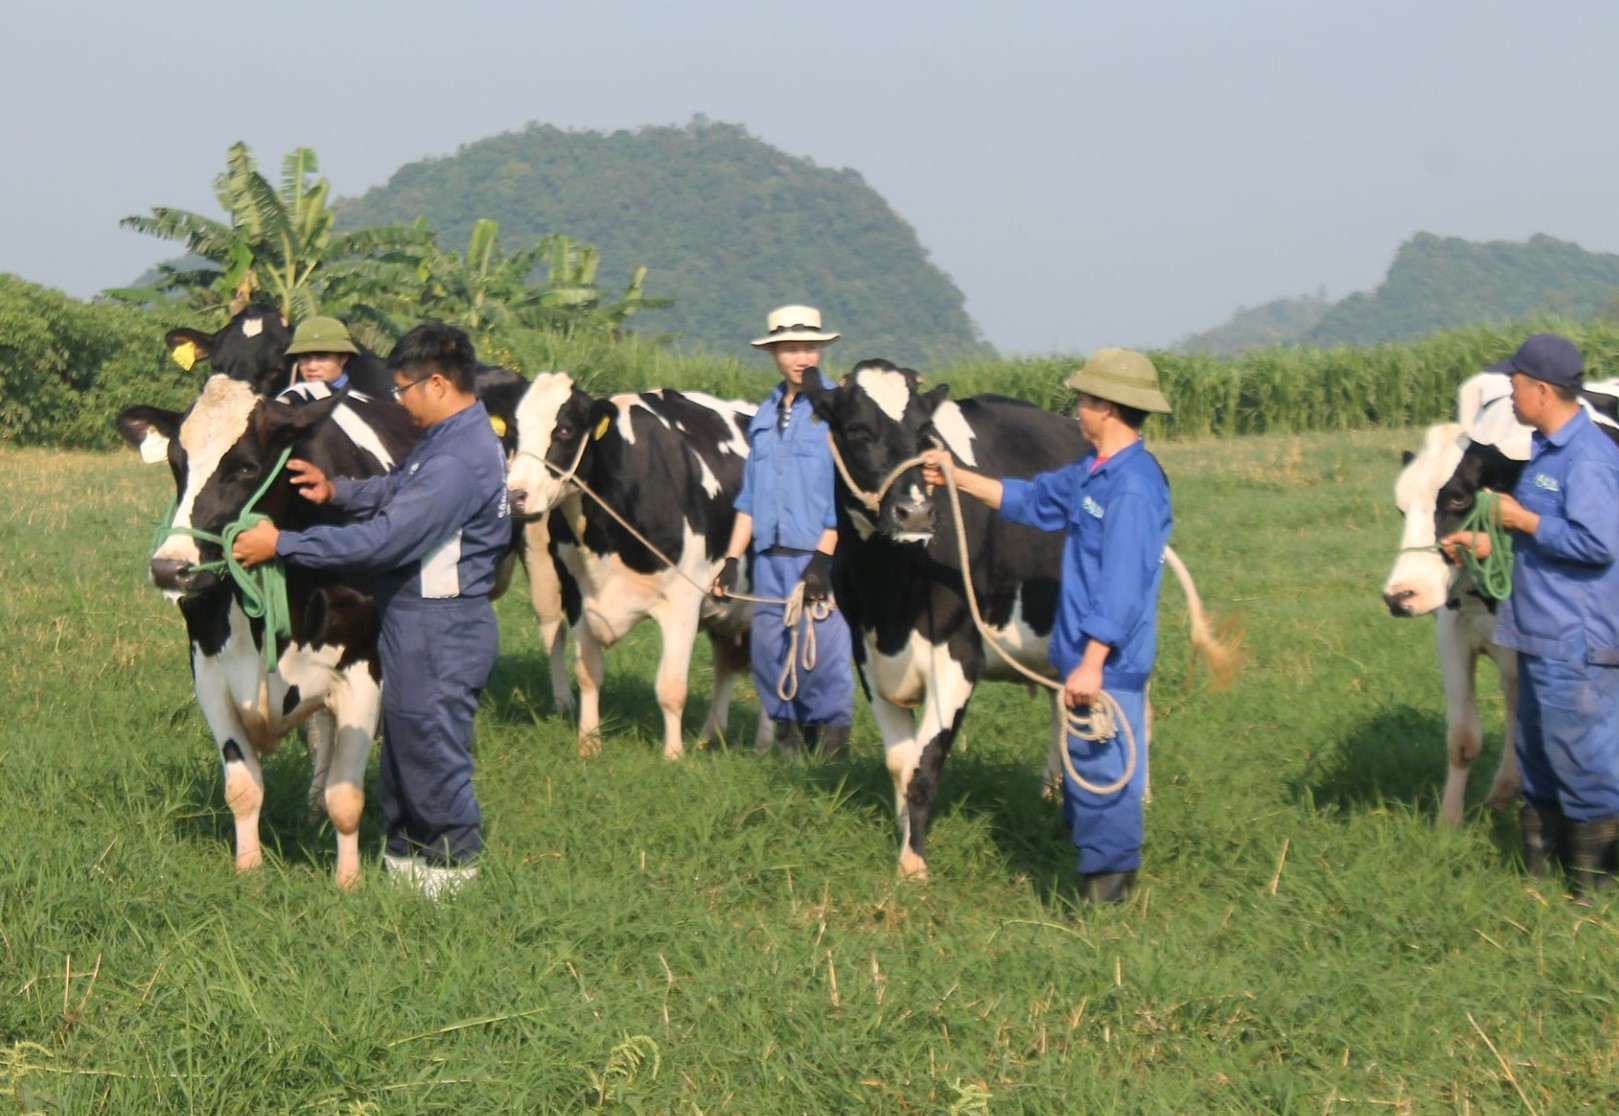 Đại gia súc đang áp dụng chiến lược mới trong chăn nuôi để tạo ra sản phẩm sữa tốt nhất. Hãy xem hình ảnh liên quan để tìm hiểu về các chiến lược này và đóng góp của đại gia súc trong cải tiến chất lượng sản phẩm sữa.